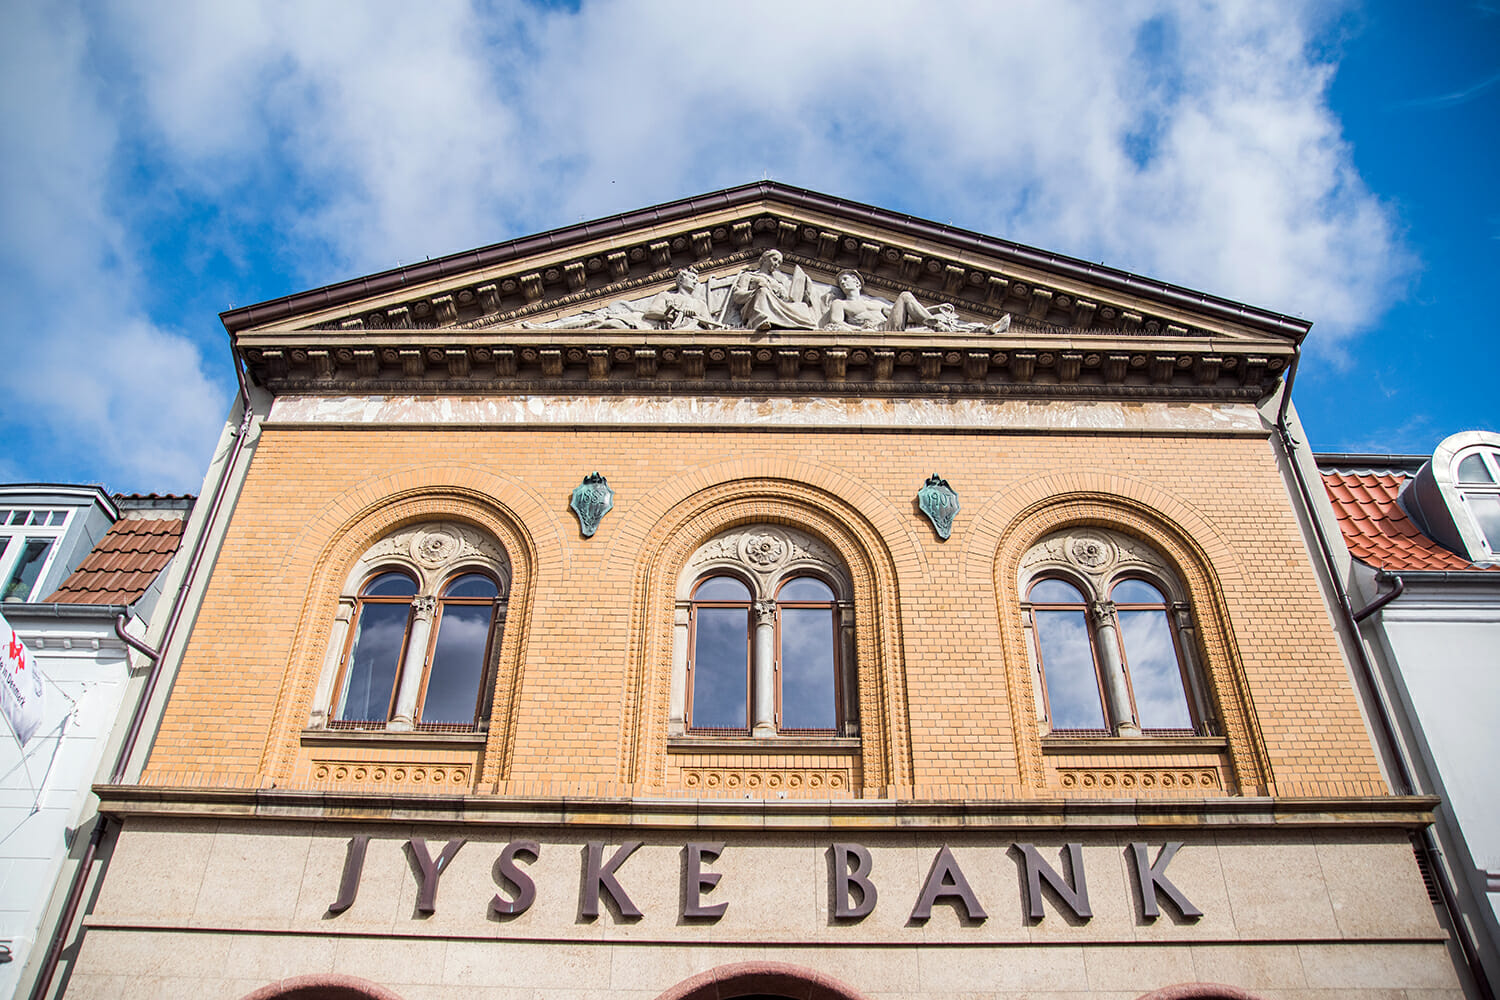 Jyske Bank in Silkeborg, Denmark